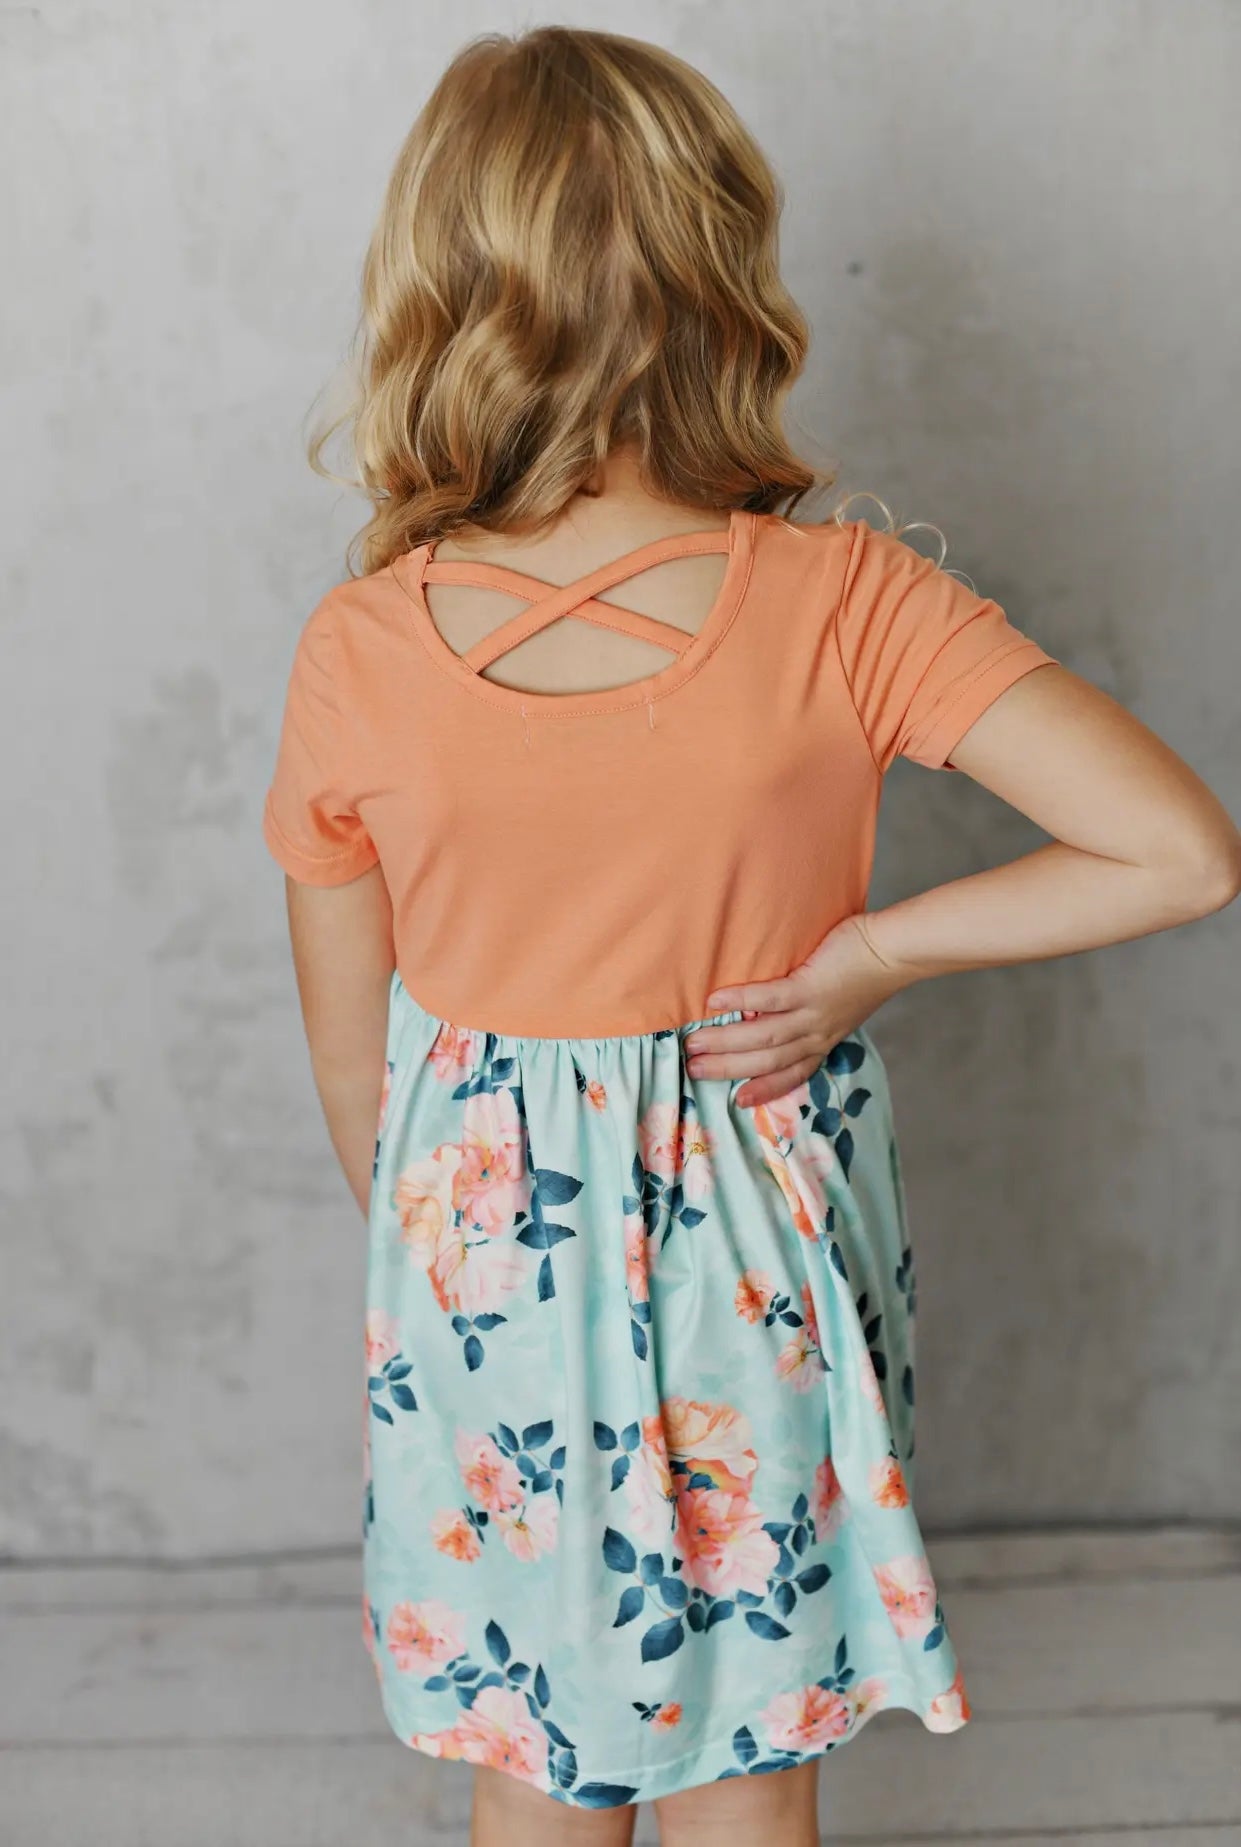 Teal & Peach Floral Dress